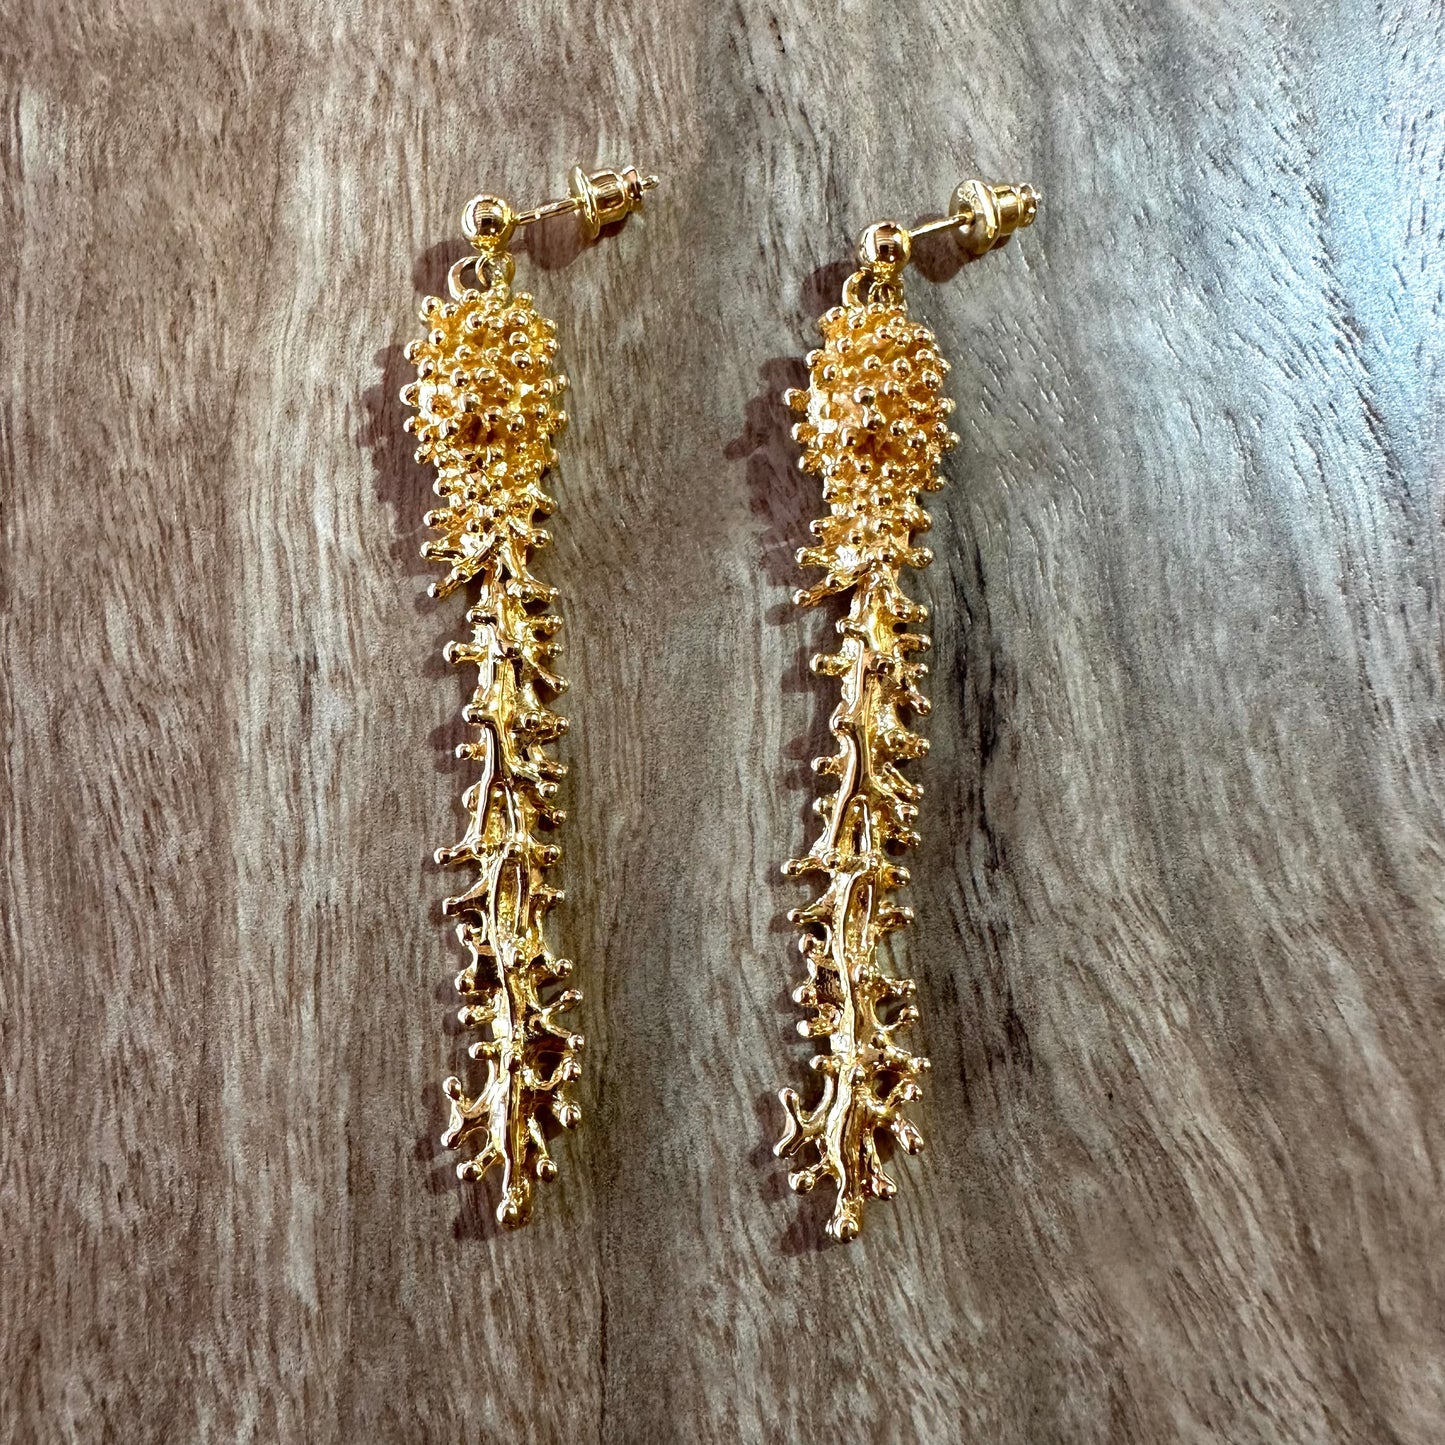 Earrings - Anemone, 18kt Yellow Gold Finish Long Drop